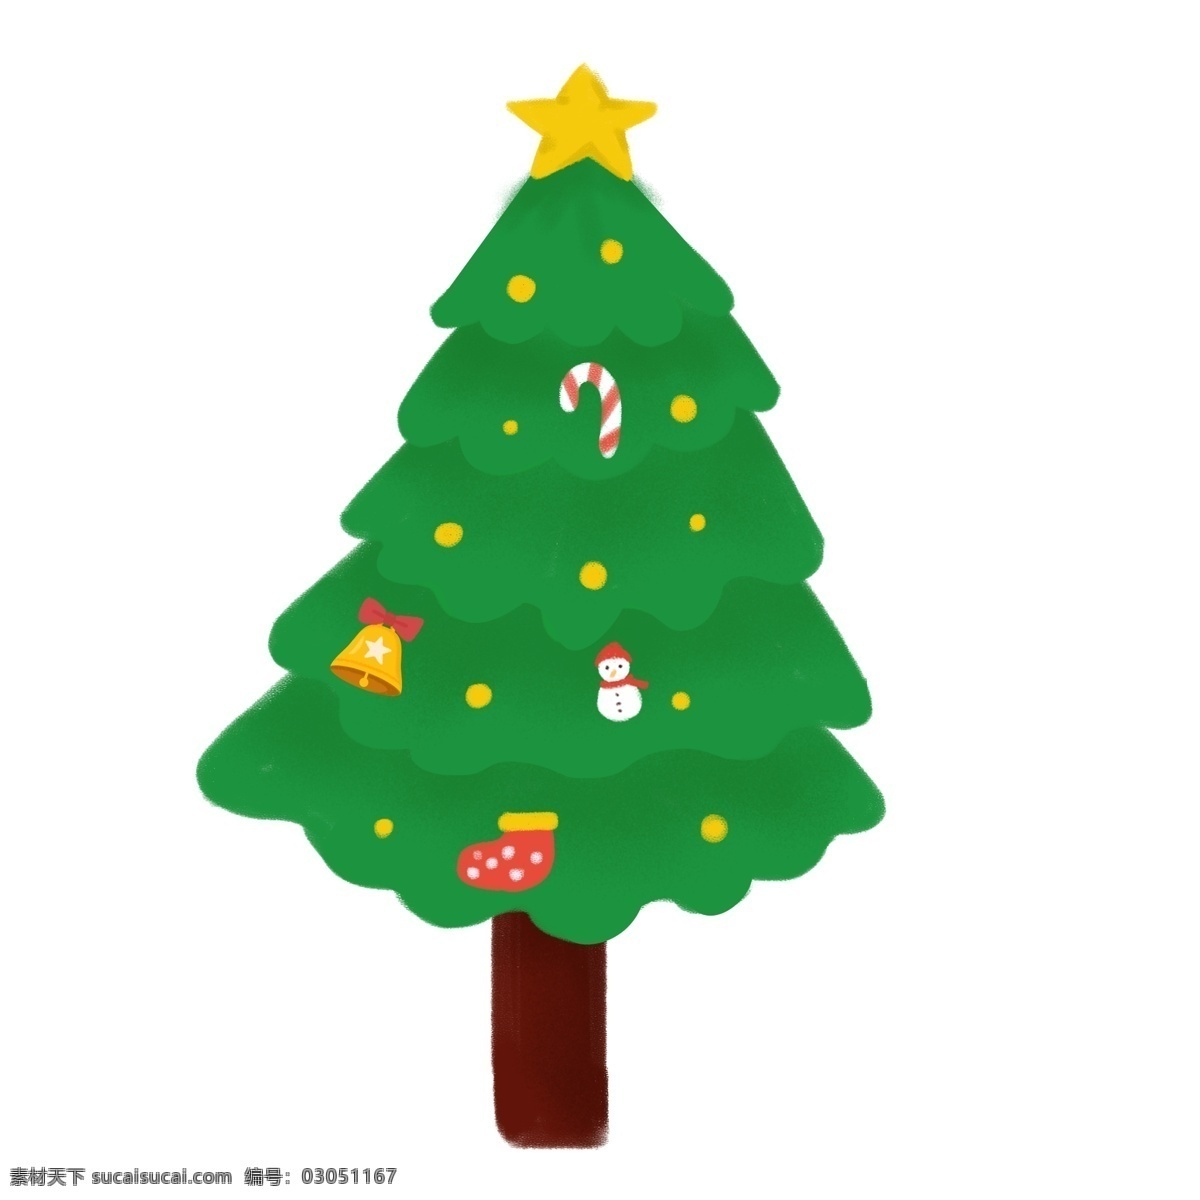 圣诞节 卡通 圣诞树 绿色 清新 冬季 插画 植物 树木 糖果 铃铛 袜子